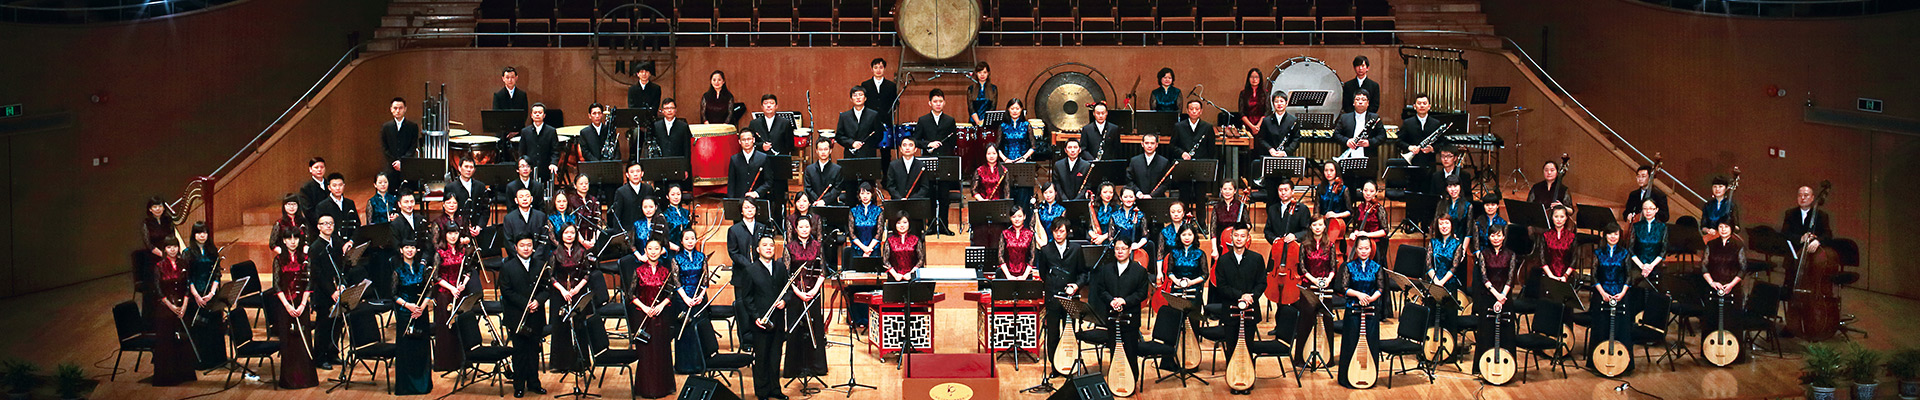 上海民族乐团 SHCO, China national instrumental music